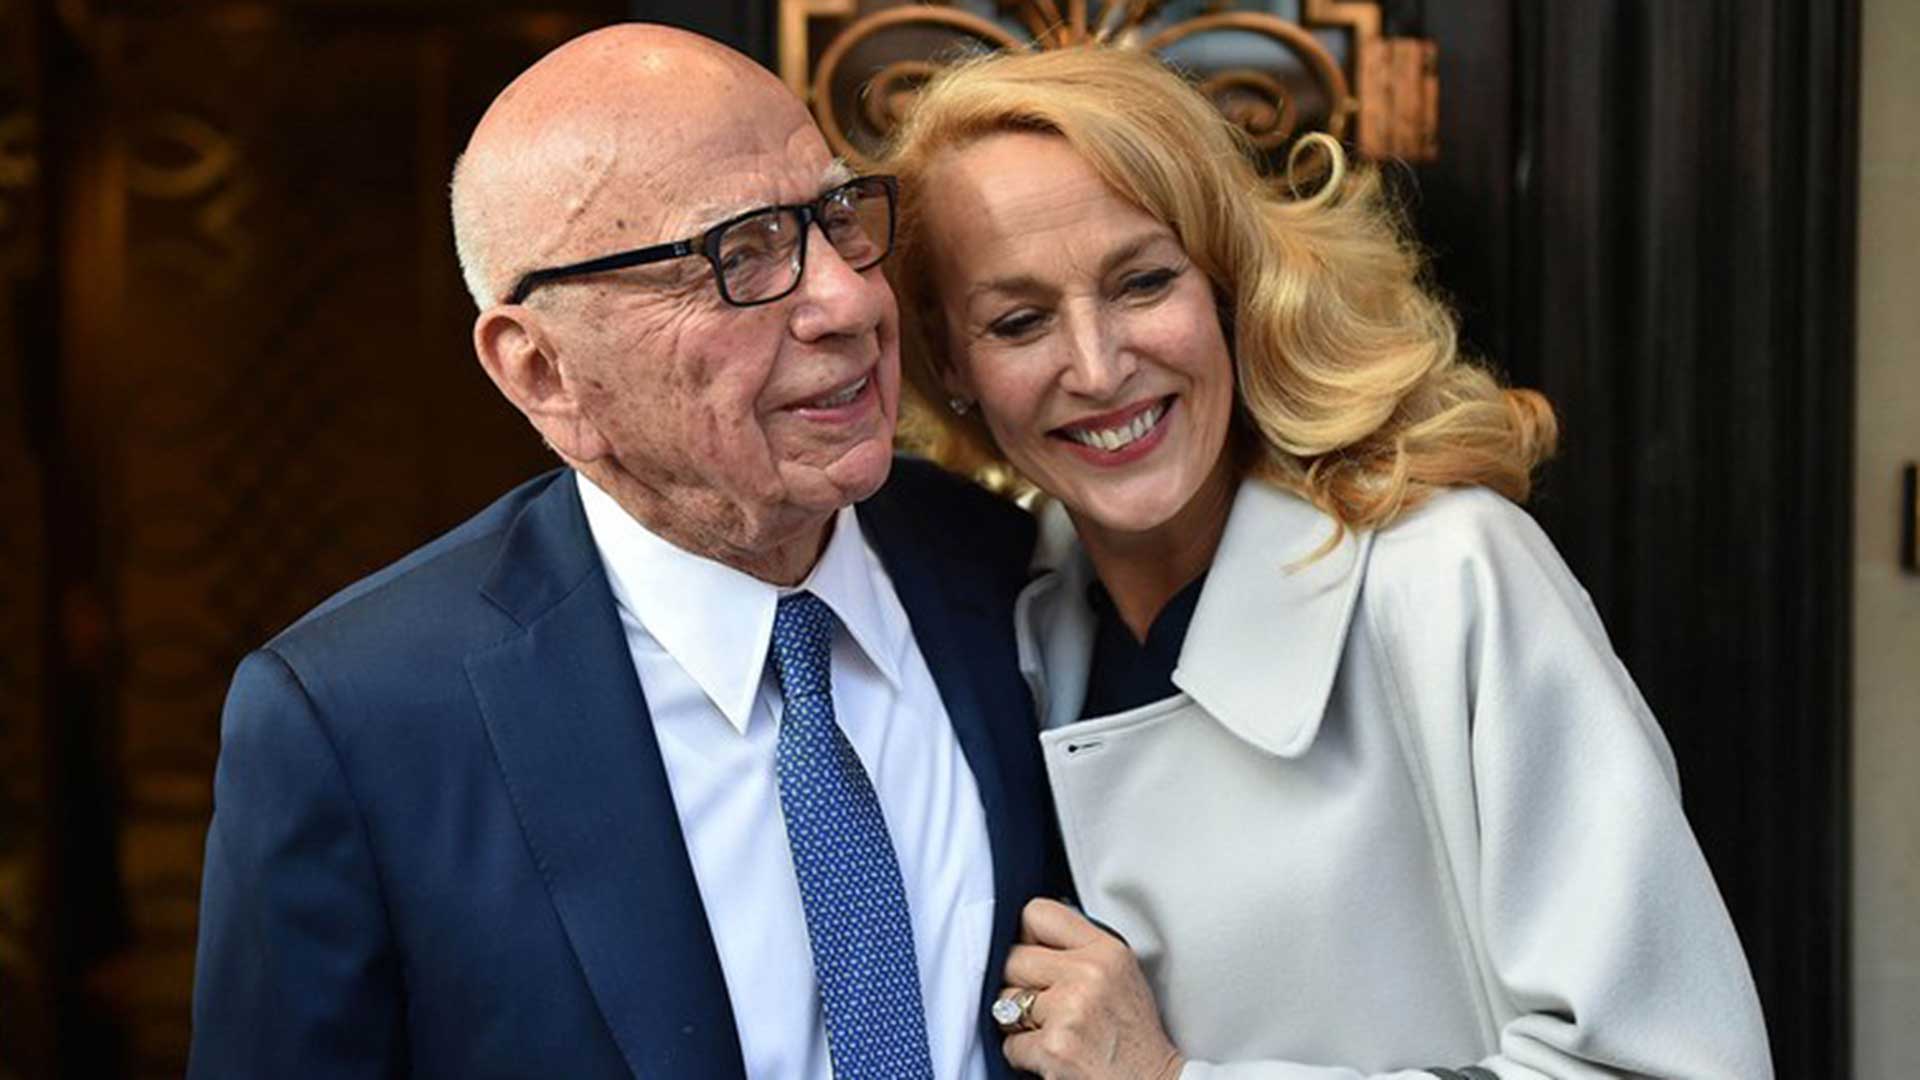 El magnate de los medios Rupert Murdoch finalizó su divorcio con Jerry Hall: “Seguimos siendo buenos amigos”